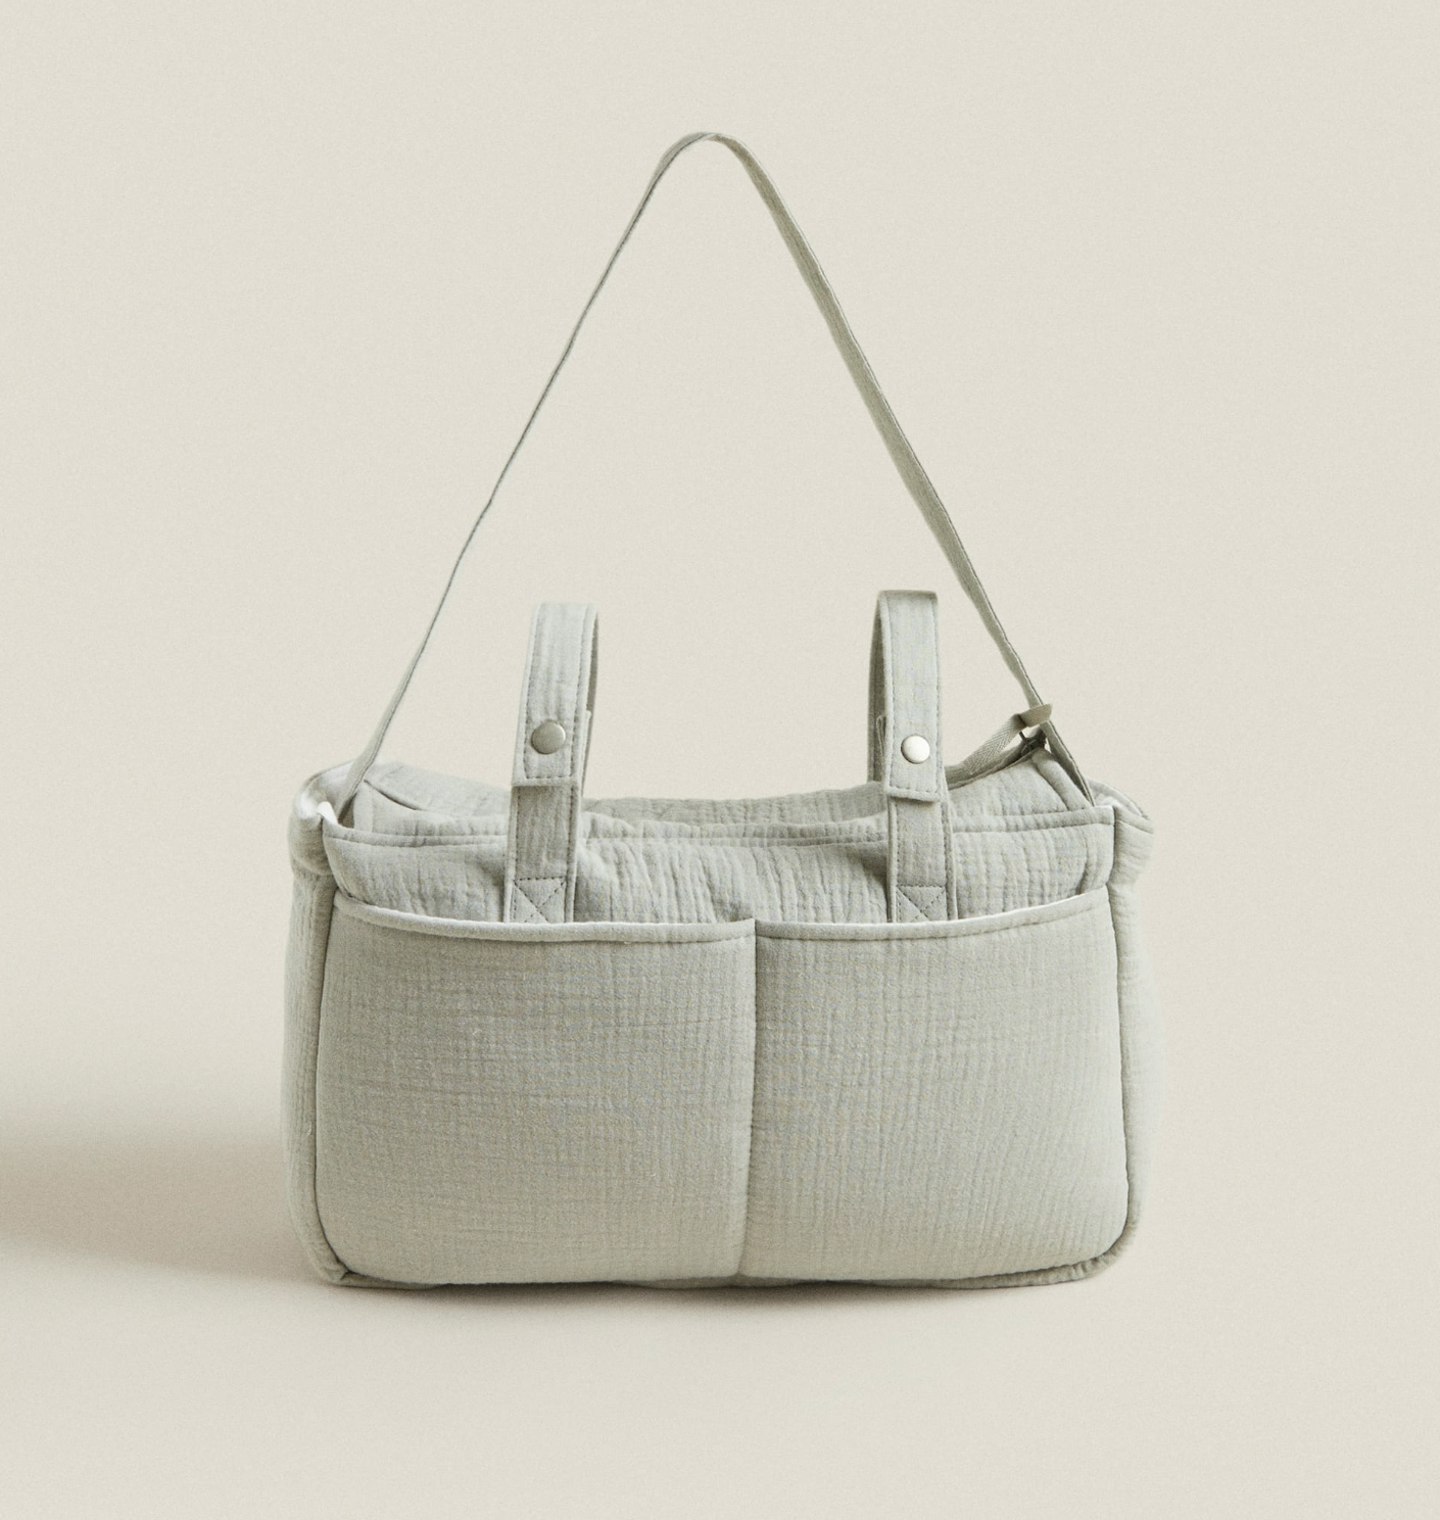 Zara Clover Maternity Bag